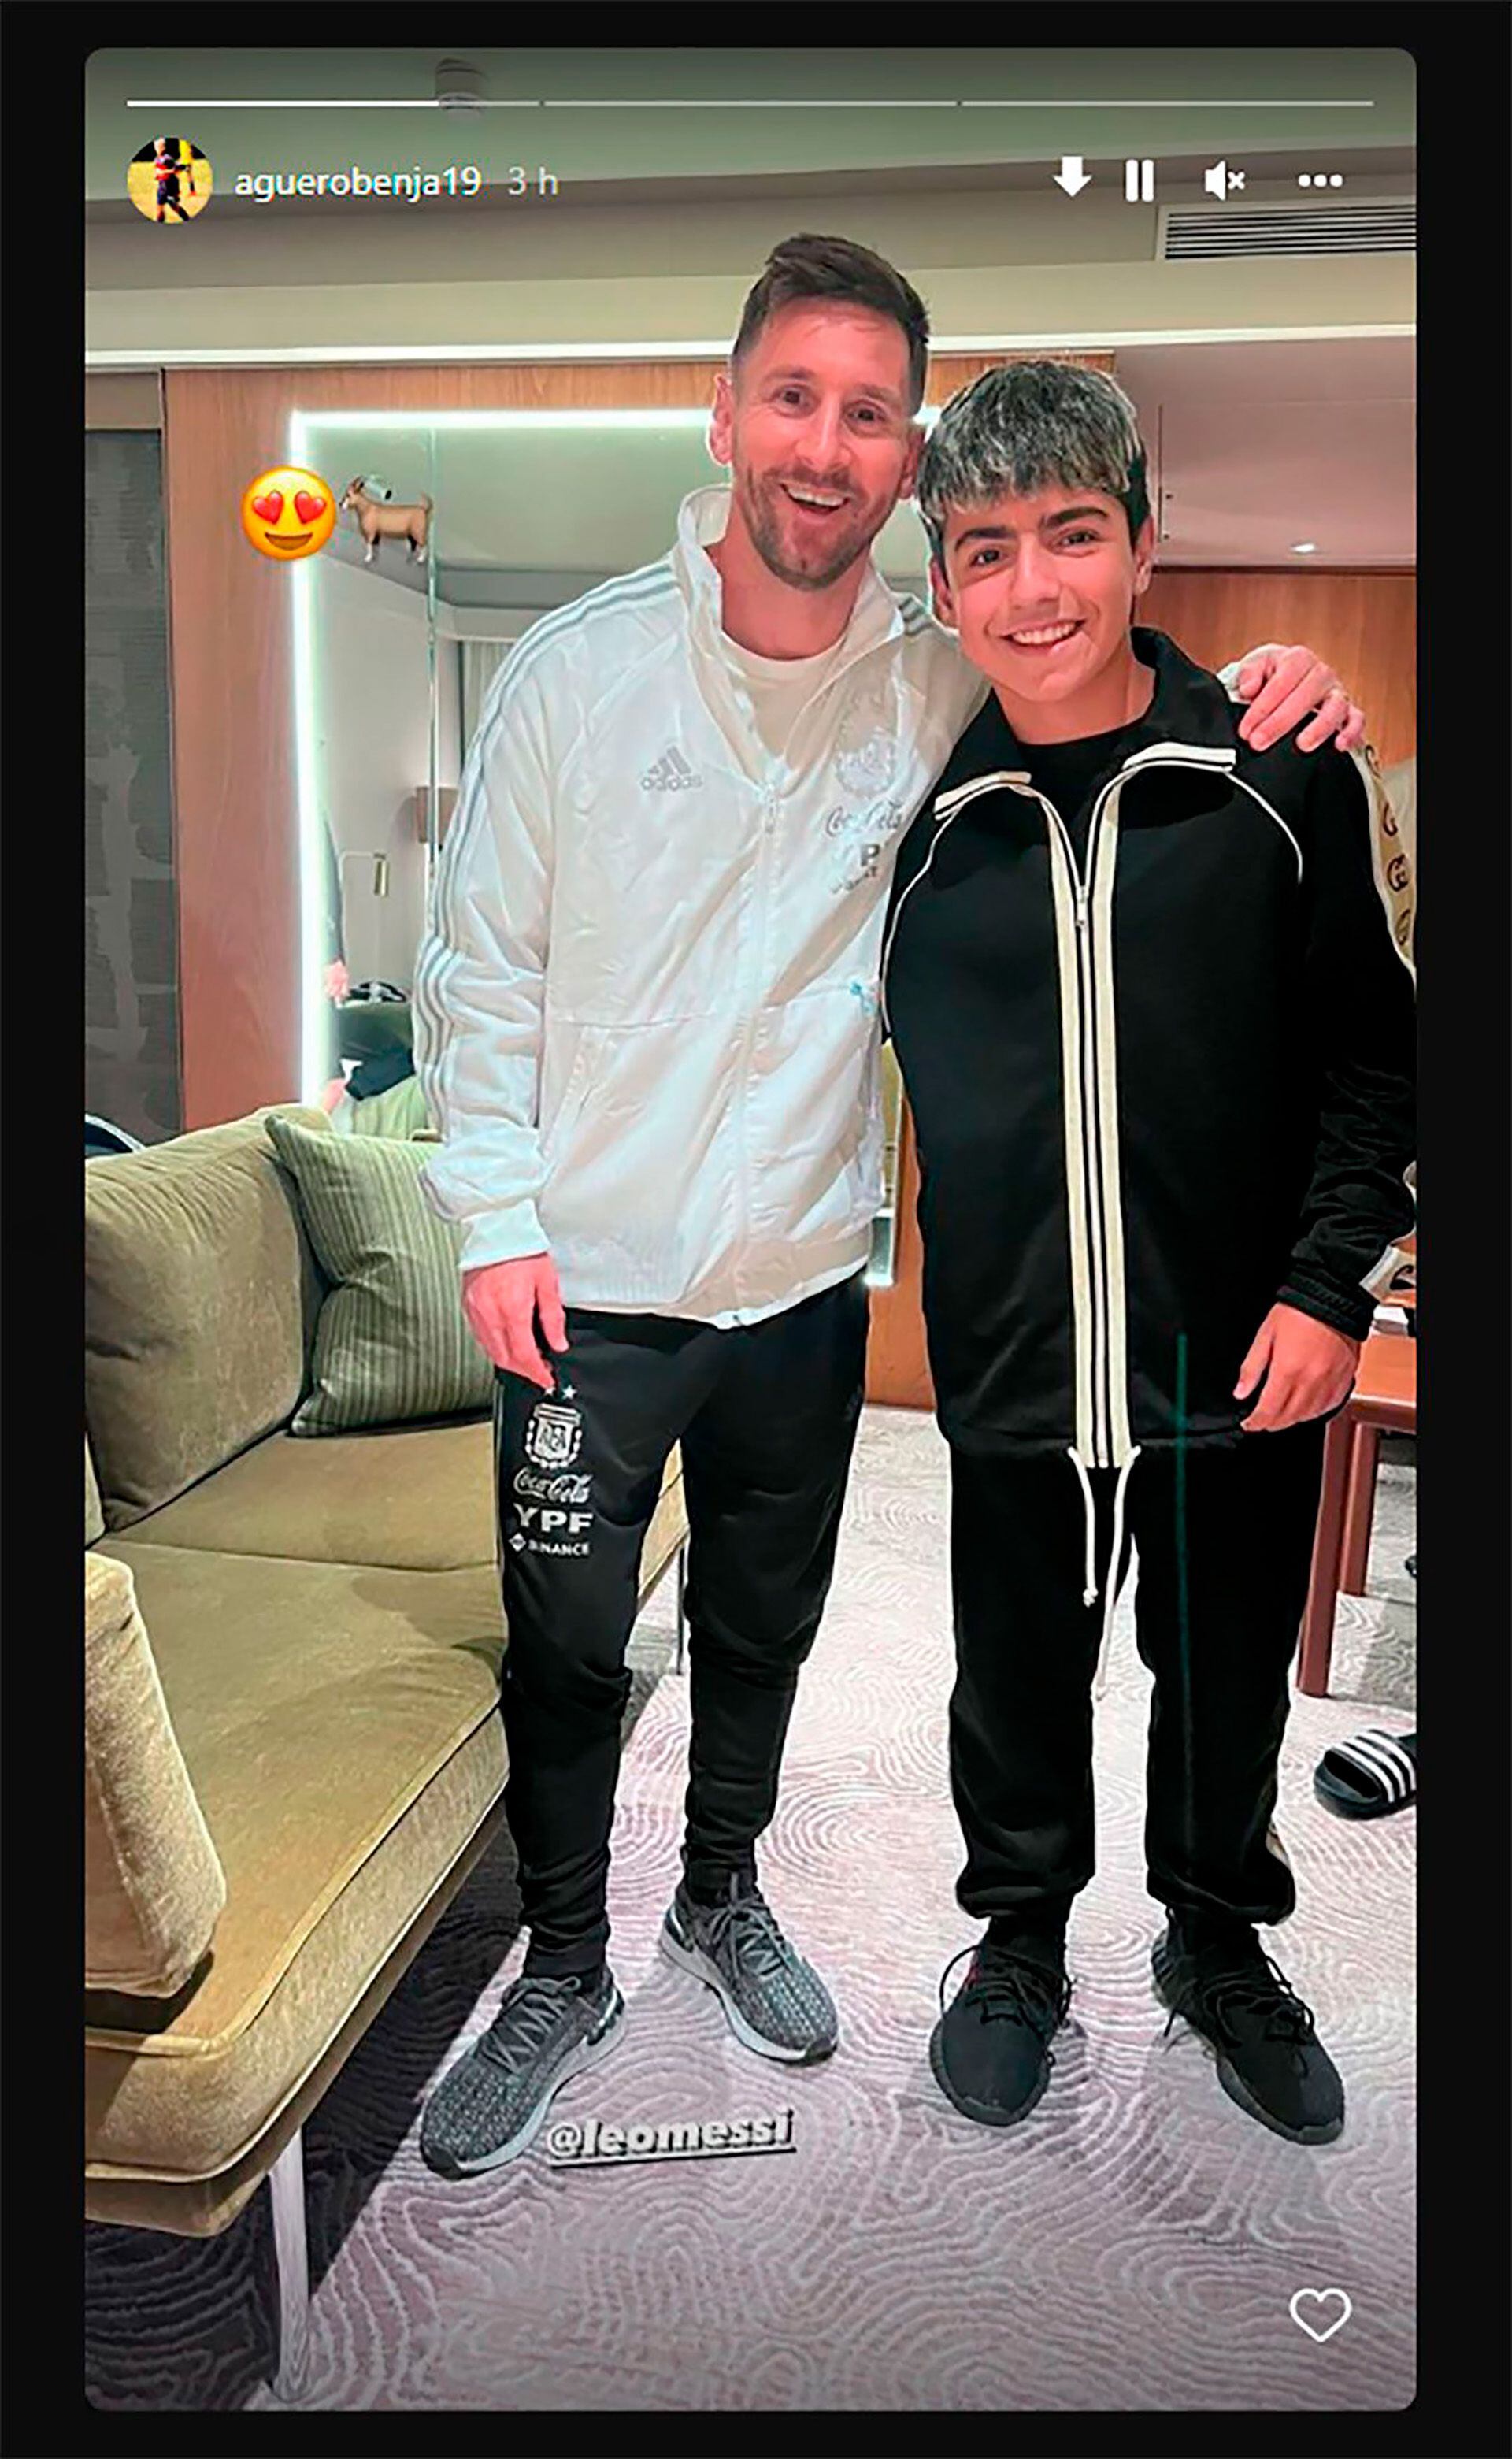 Messi y Benjamín Agüero